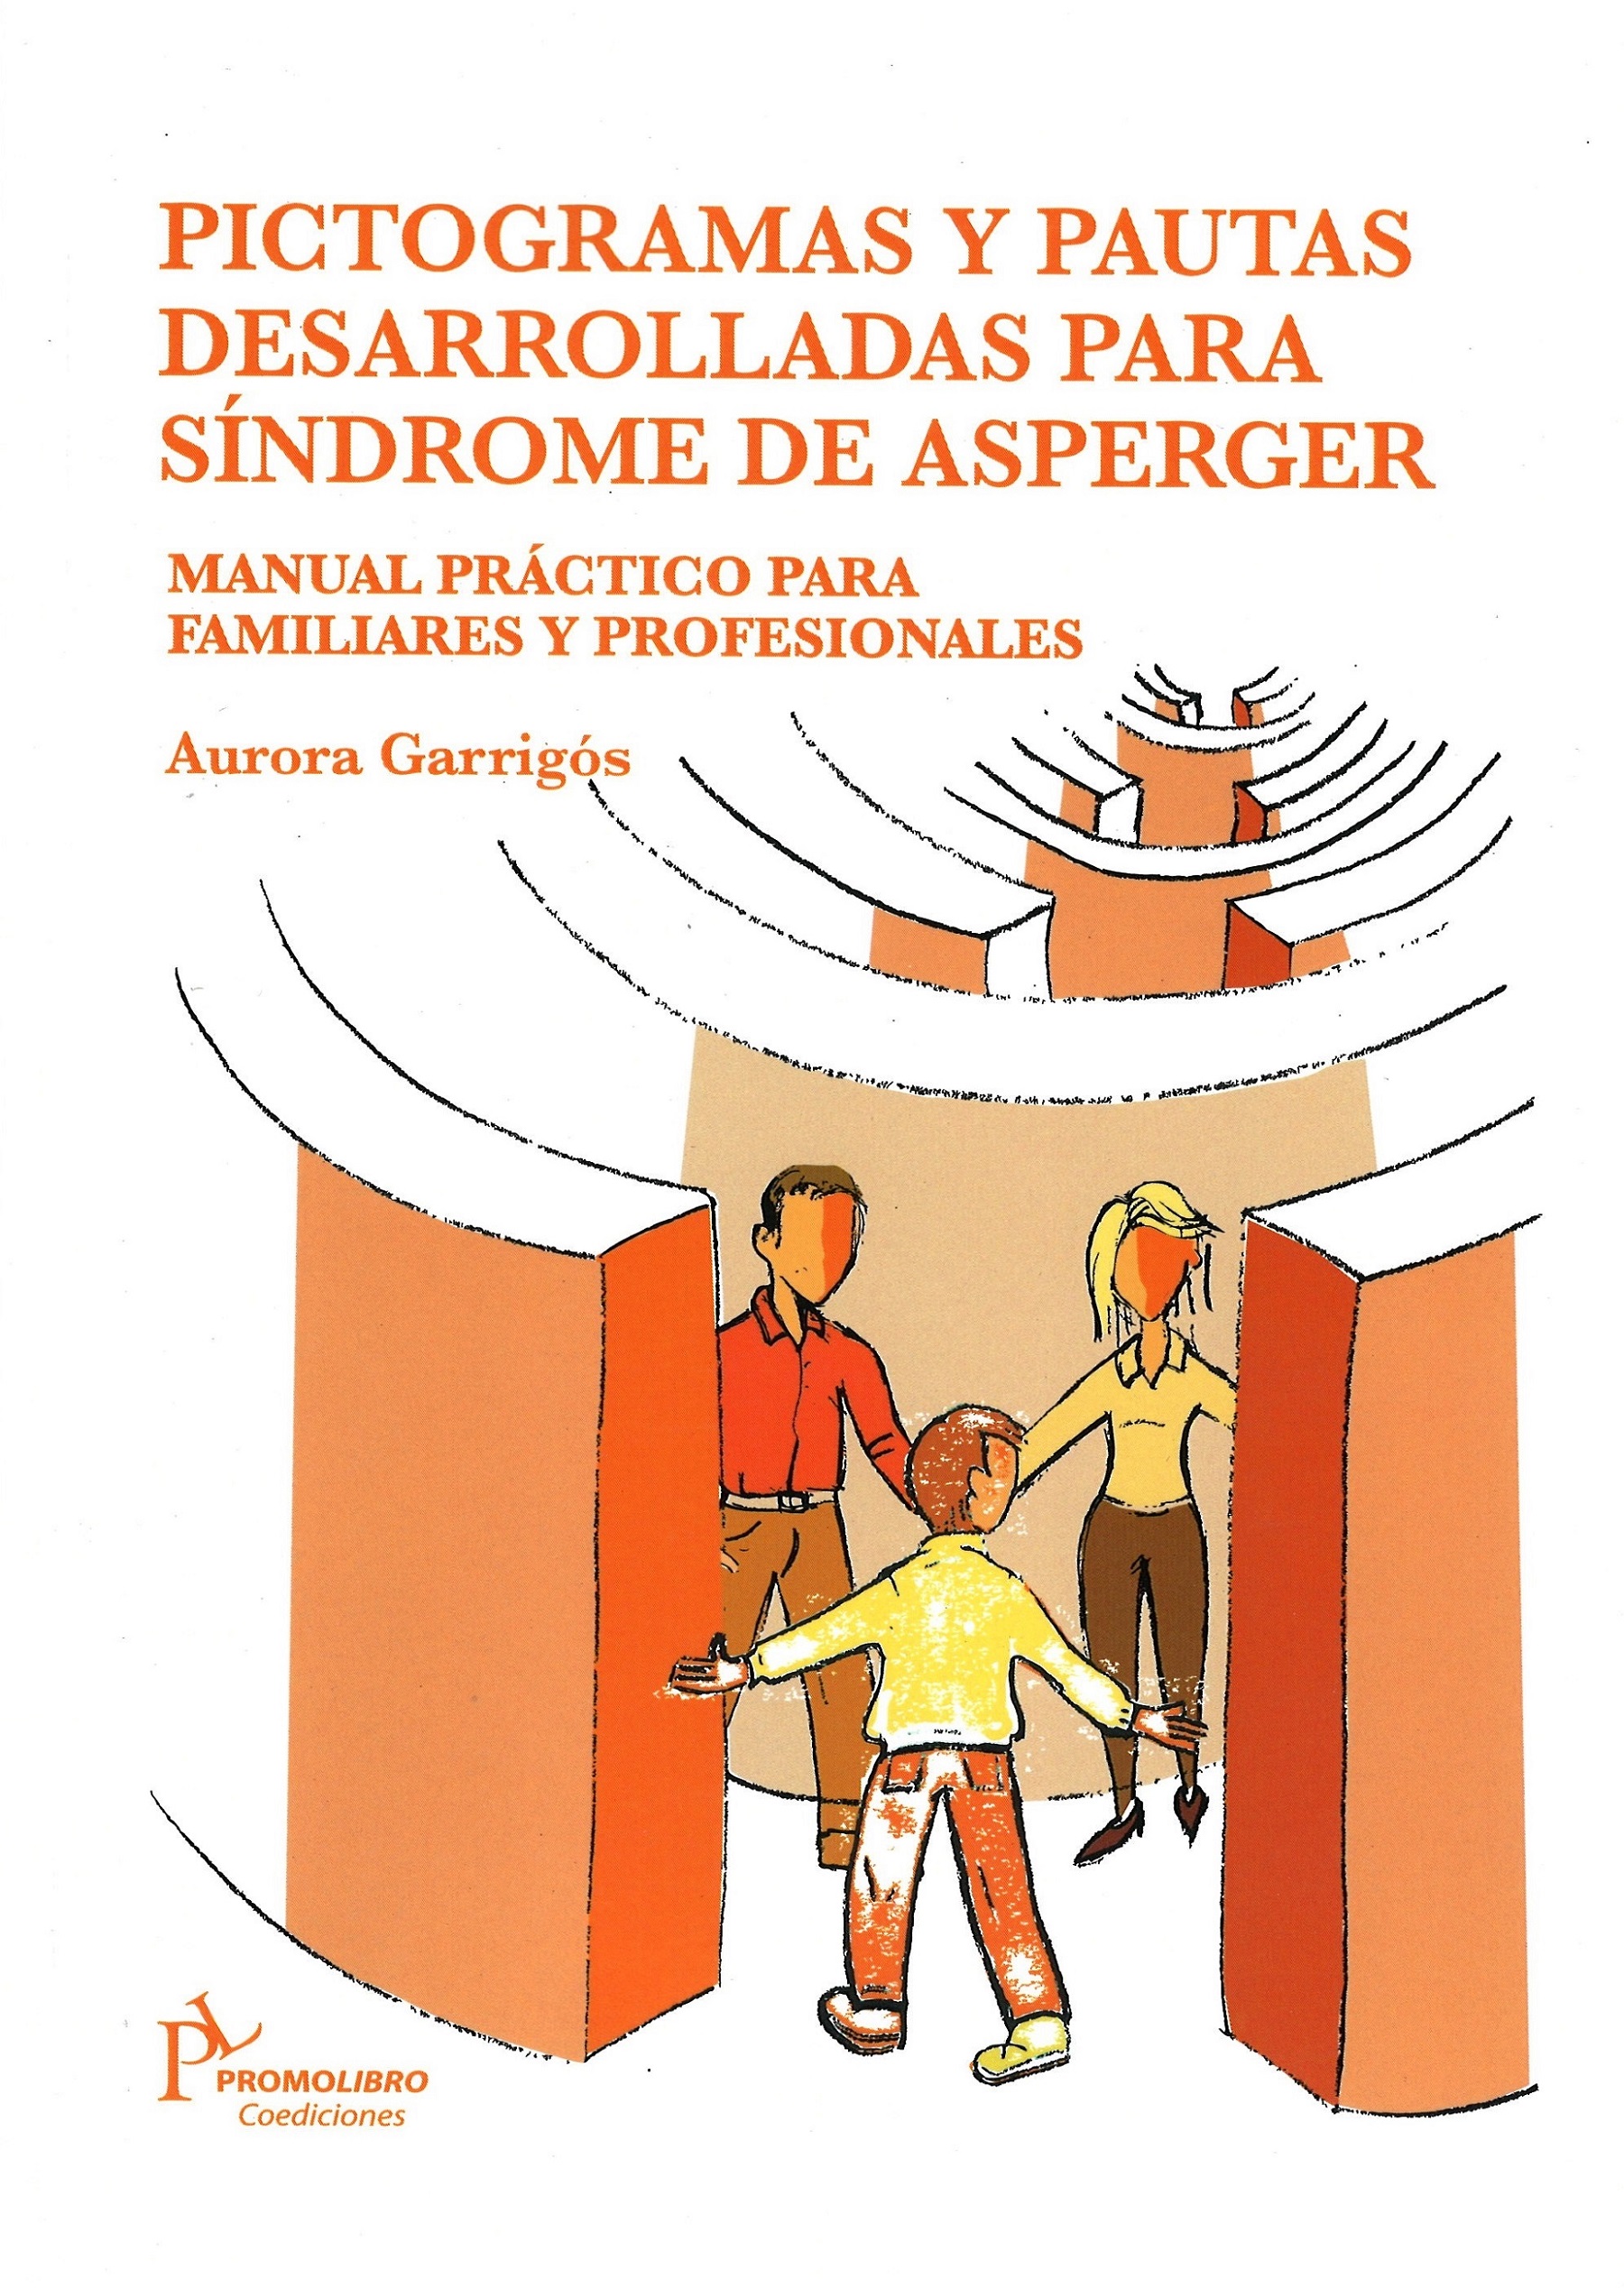 Imagen de portada del libro Pictogramas y pautas desarrolladas para Síndrome de Asperger